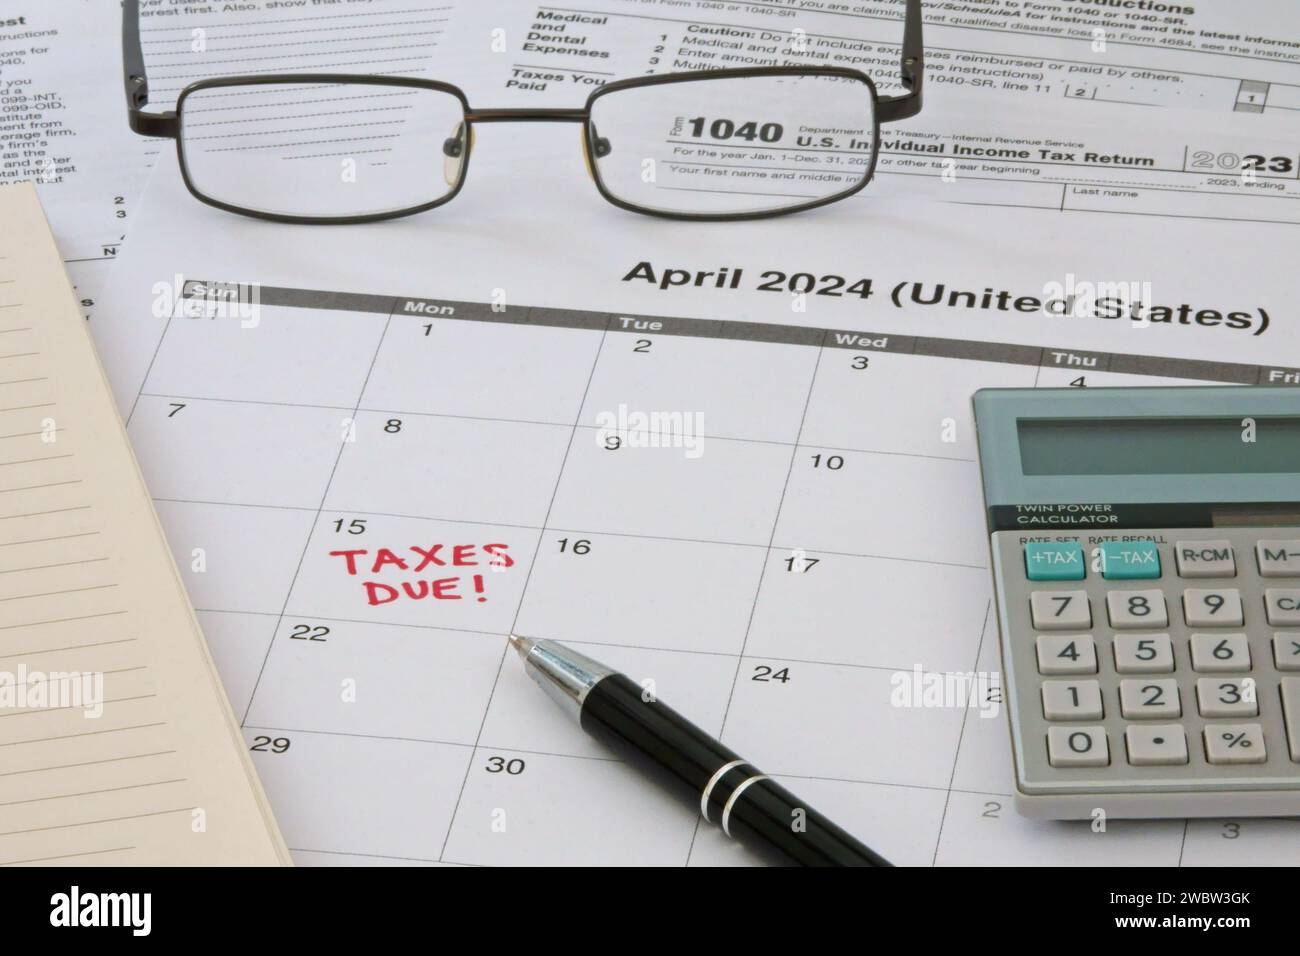 Un calendario 2024 che prende nota della scadenza per la presentazione delle imposte dell'anno 2023 per la presentazione del reddito dell'IRS del servizio delle entrate interno USA del 15 aprile. Foto Stock